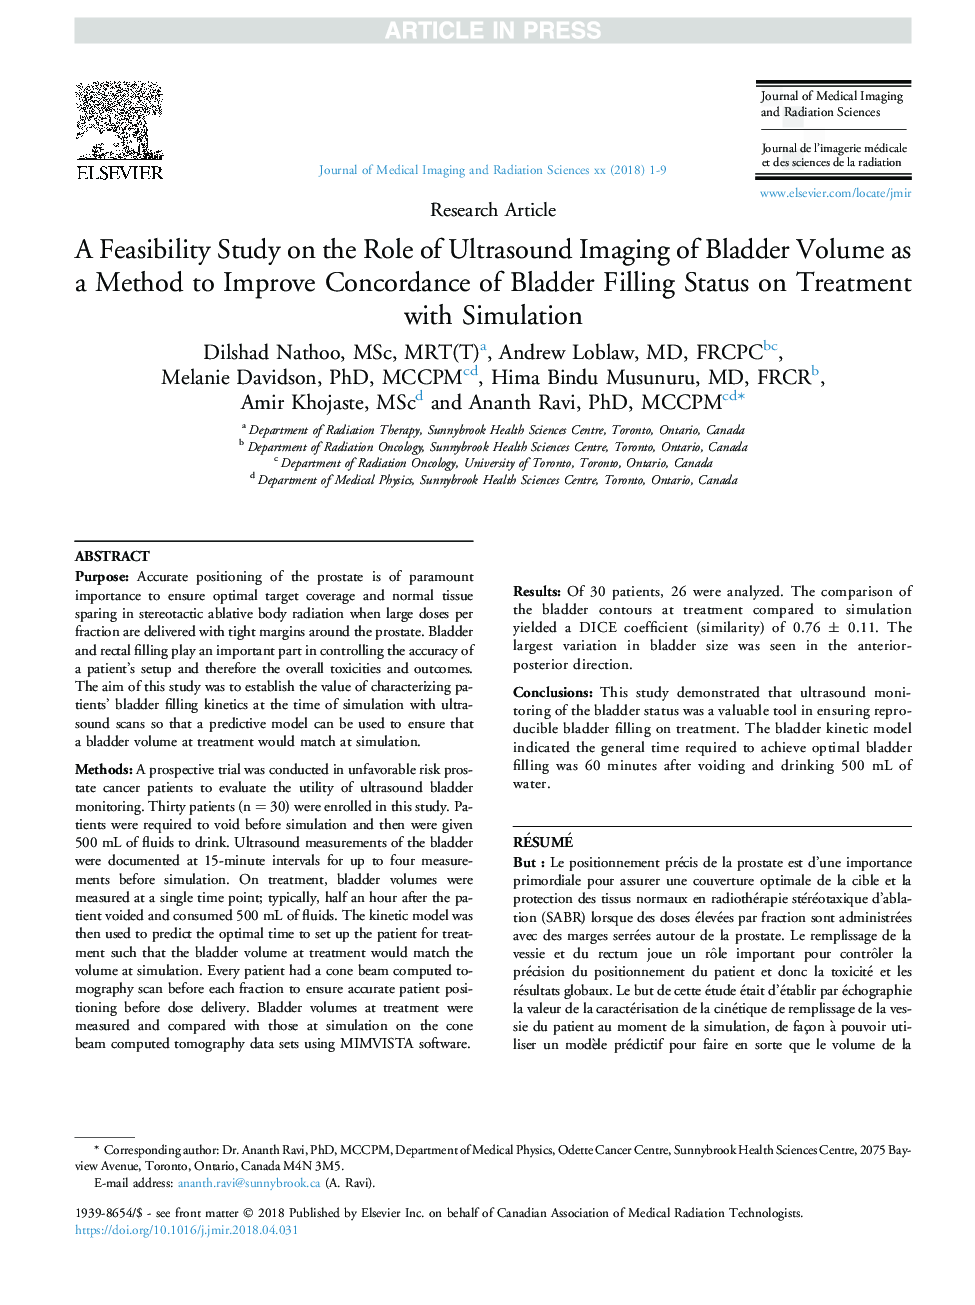 بررسی امکان سنجی نقش تصویربرداری اولتراسوند در دوره مثانه به عنوان یک روش برای بهبود سازگاری وضعیت پرکردن مثانه در درمان با شبیه سازی